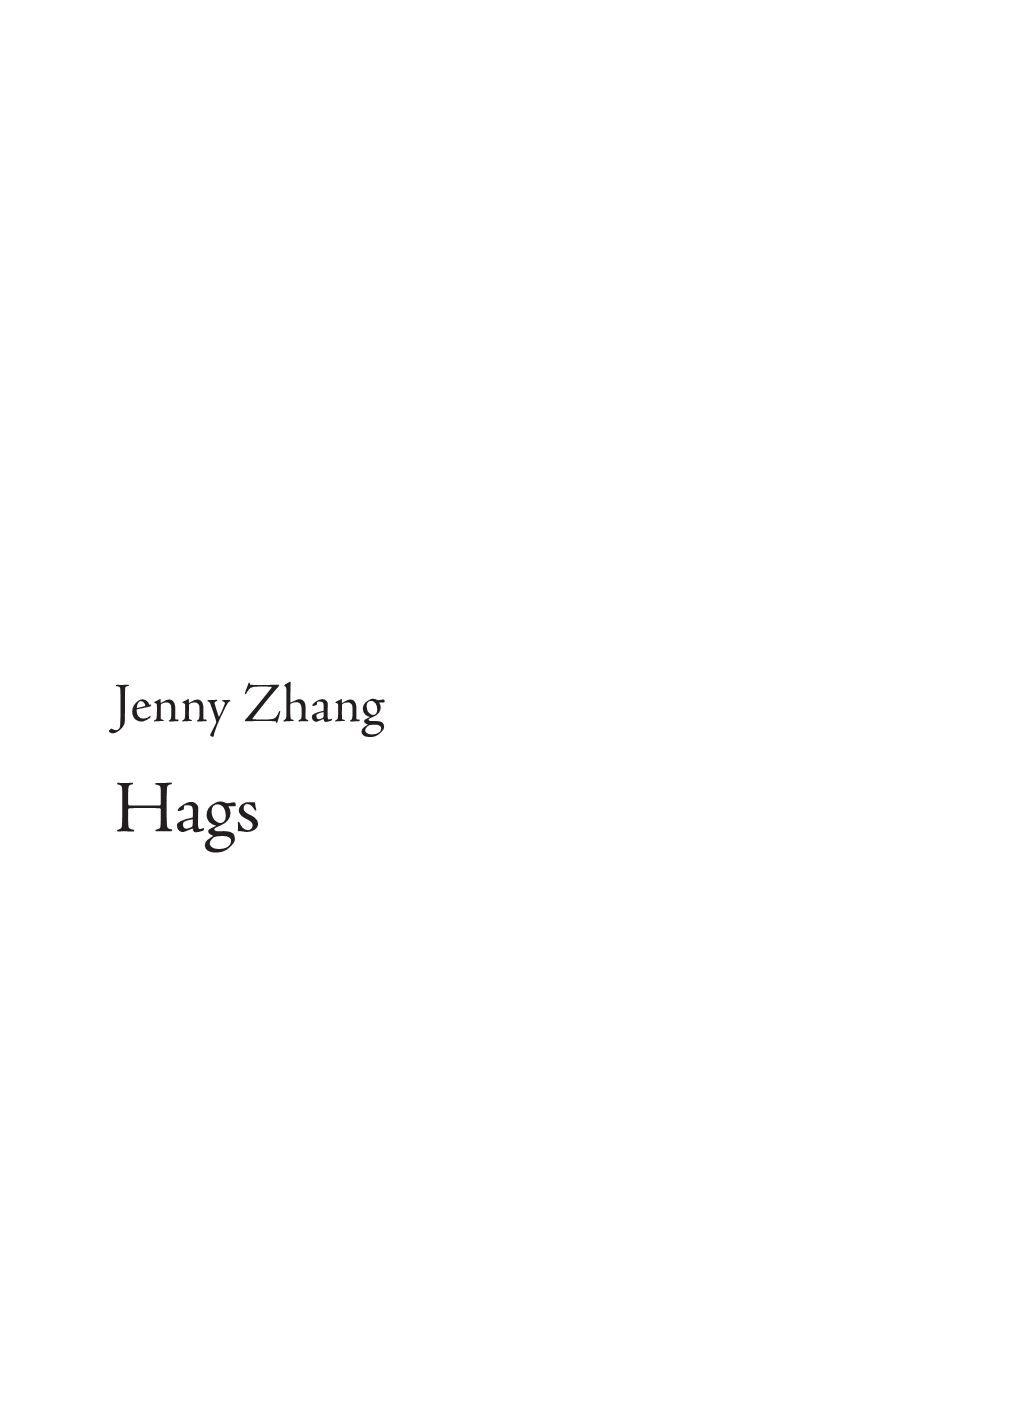 Jenny Zhang's “Hags